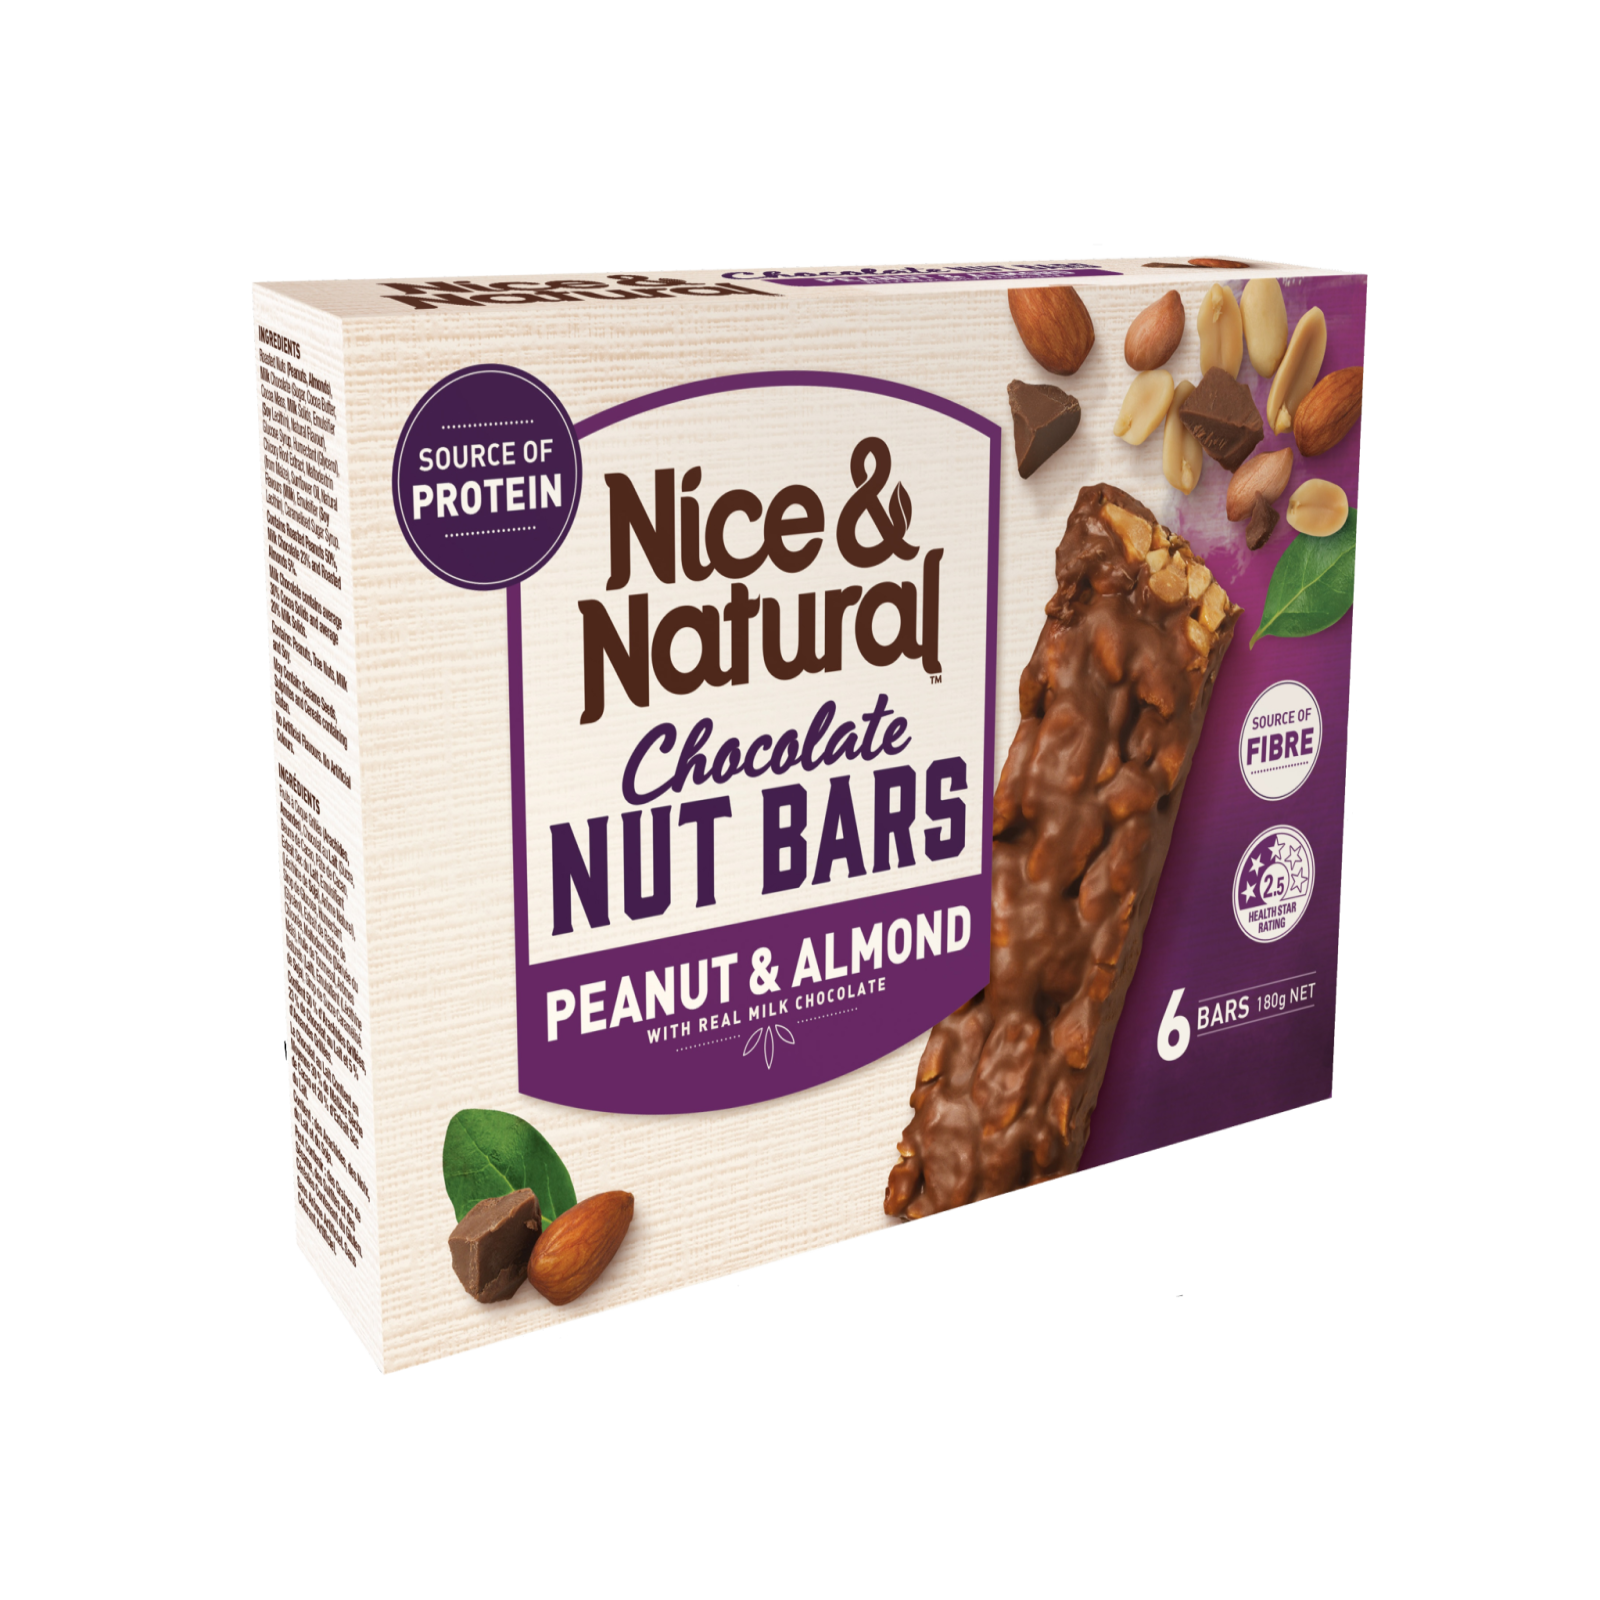 Peanut & Almond Chocolate Nut Bars product image